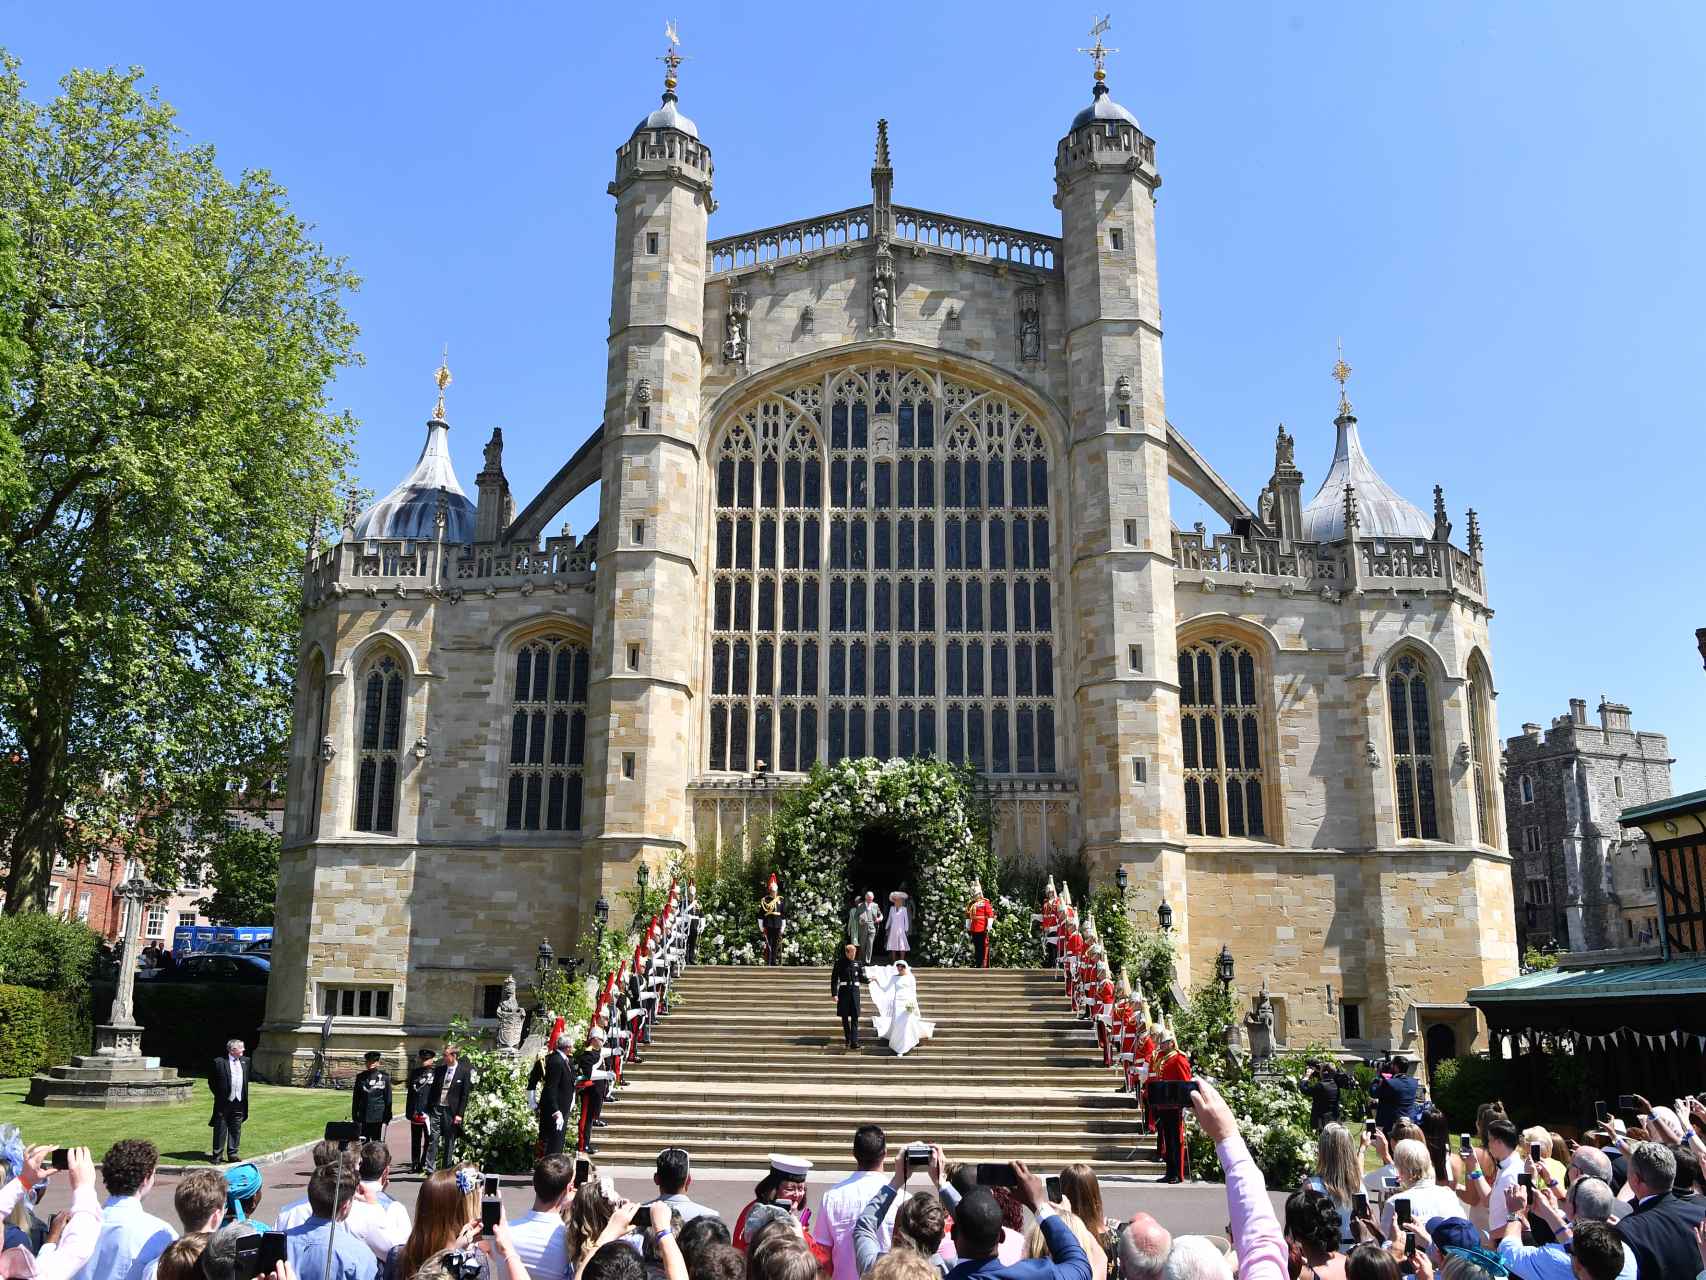 La boda de Meghan Markle y el príncipe Harry tuvo lugar en la capilla de San Jorge del castillo de Windsor.